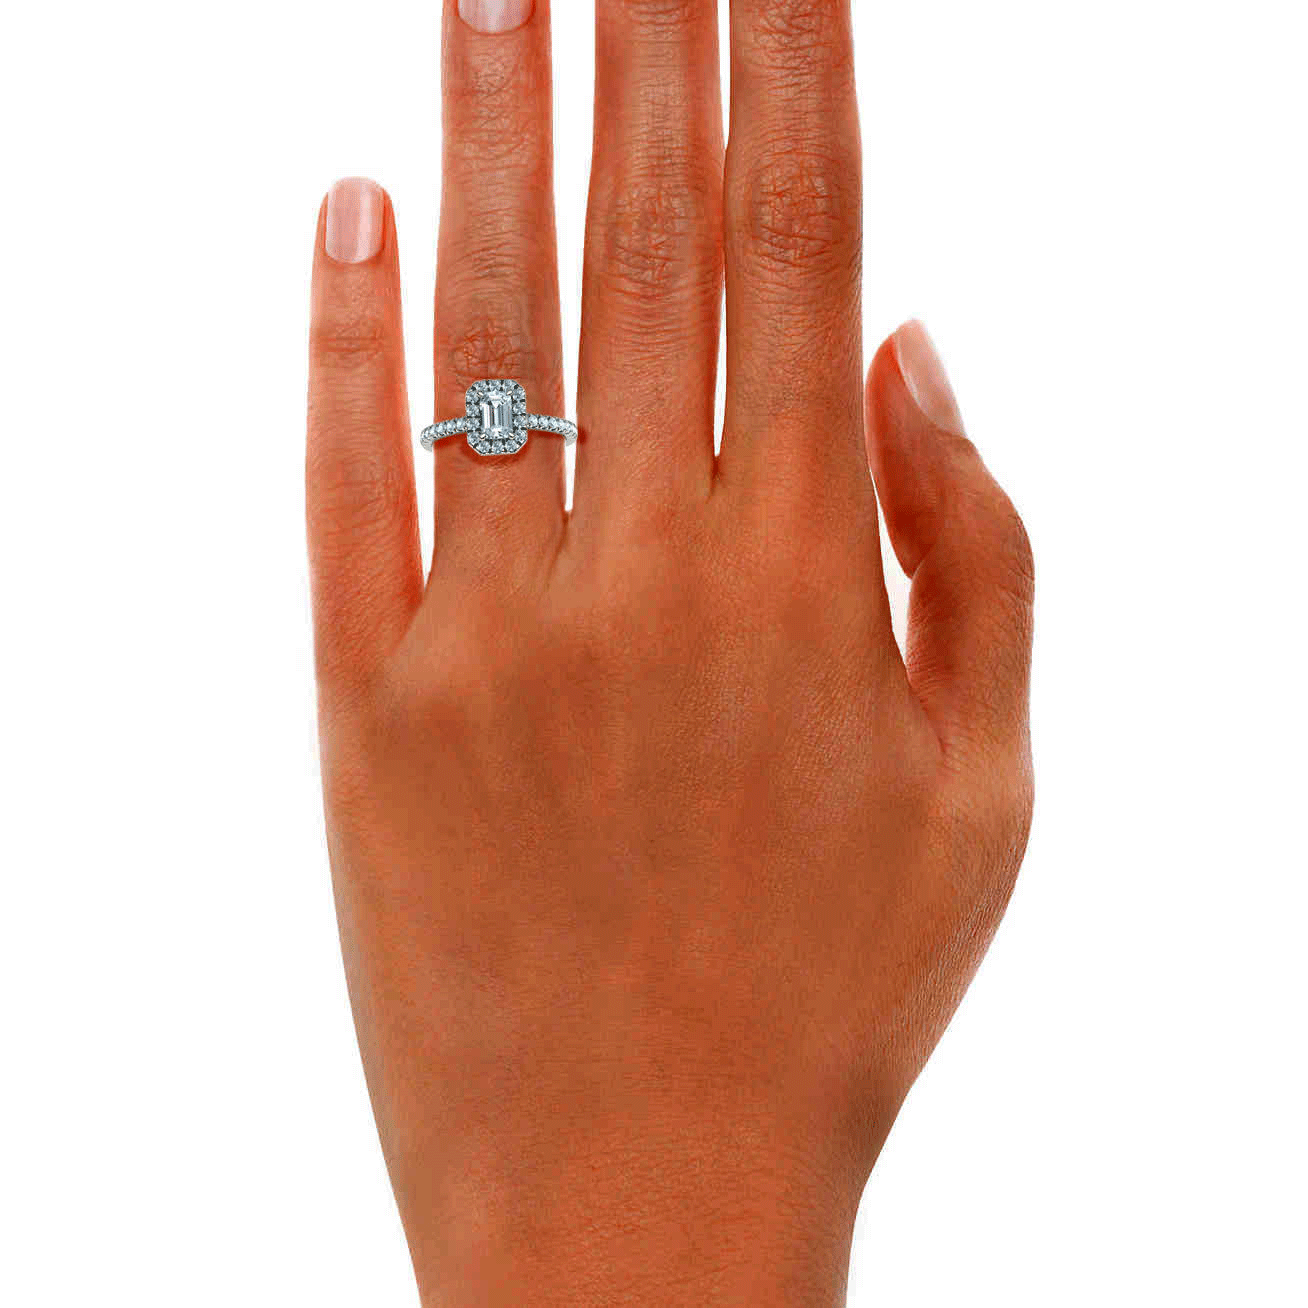 Anillo de compromiso con halo de diamantes de talla esmeralda (7/8 quilates)